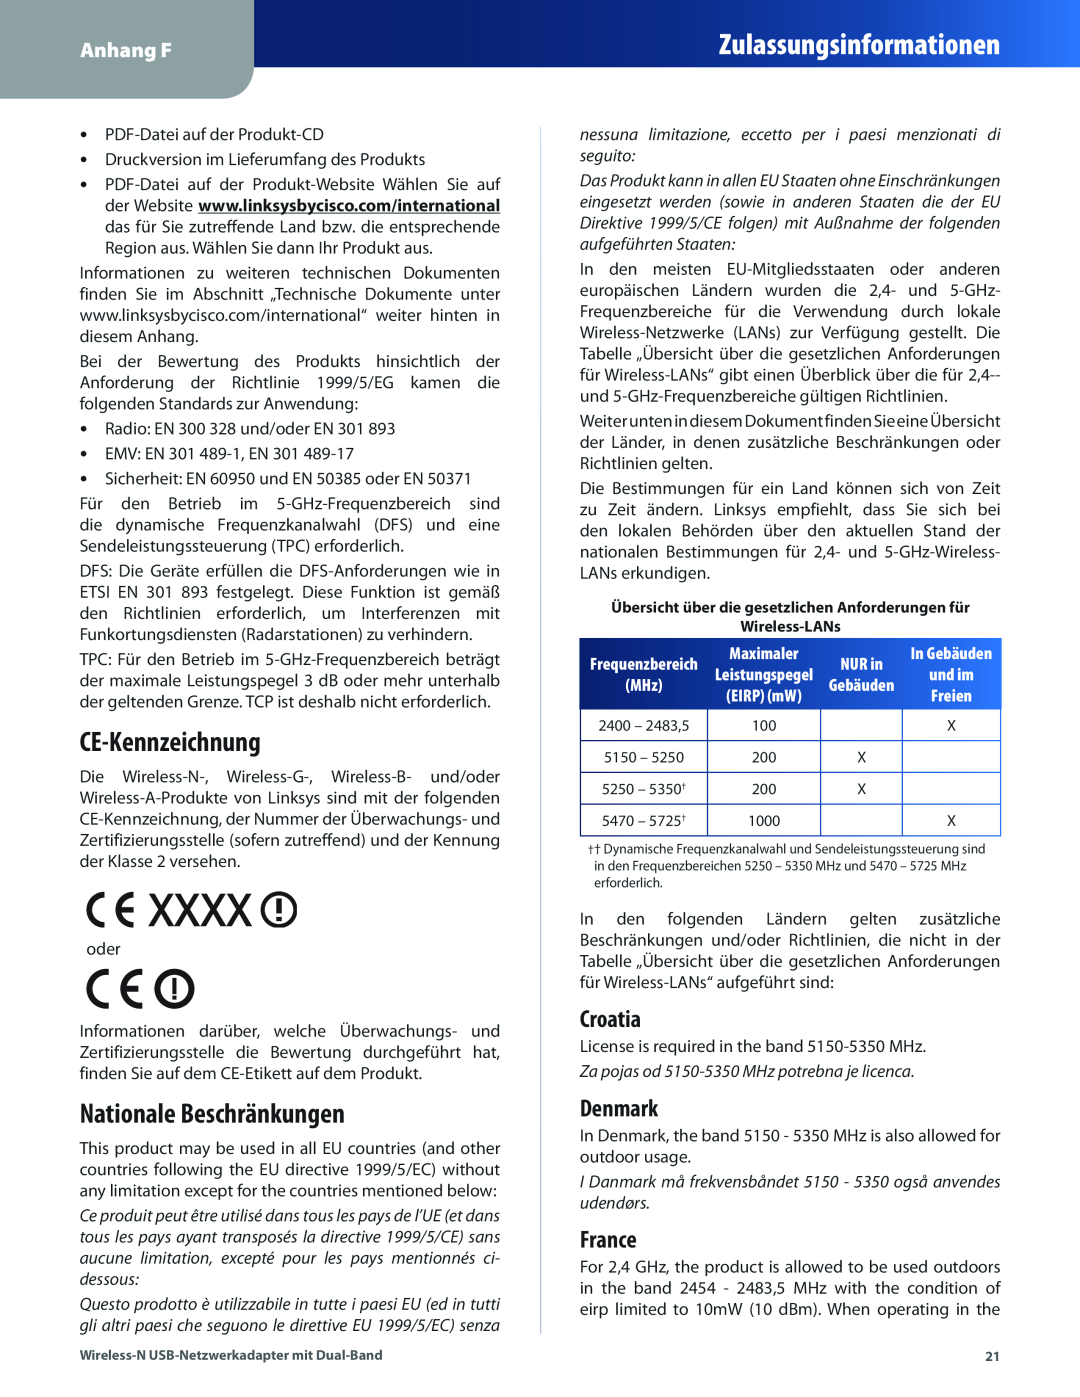 Cisco Systems WUSB600N manual CE-Kennzeichnung, Nationale Beschränkungen, Croatia, Denmark, France, Maximaler, NUR in, Xxxx 